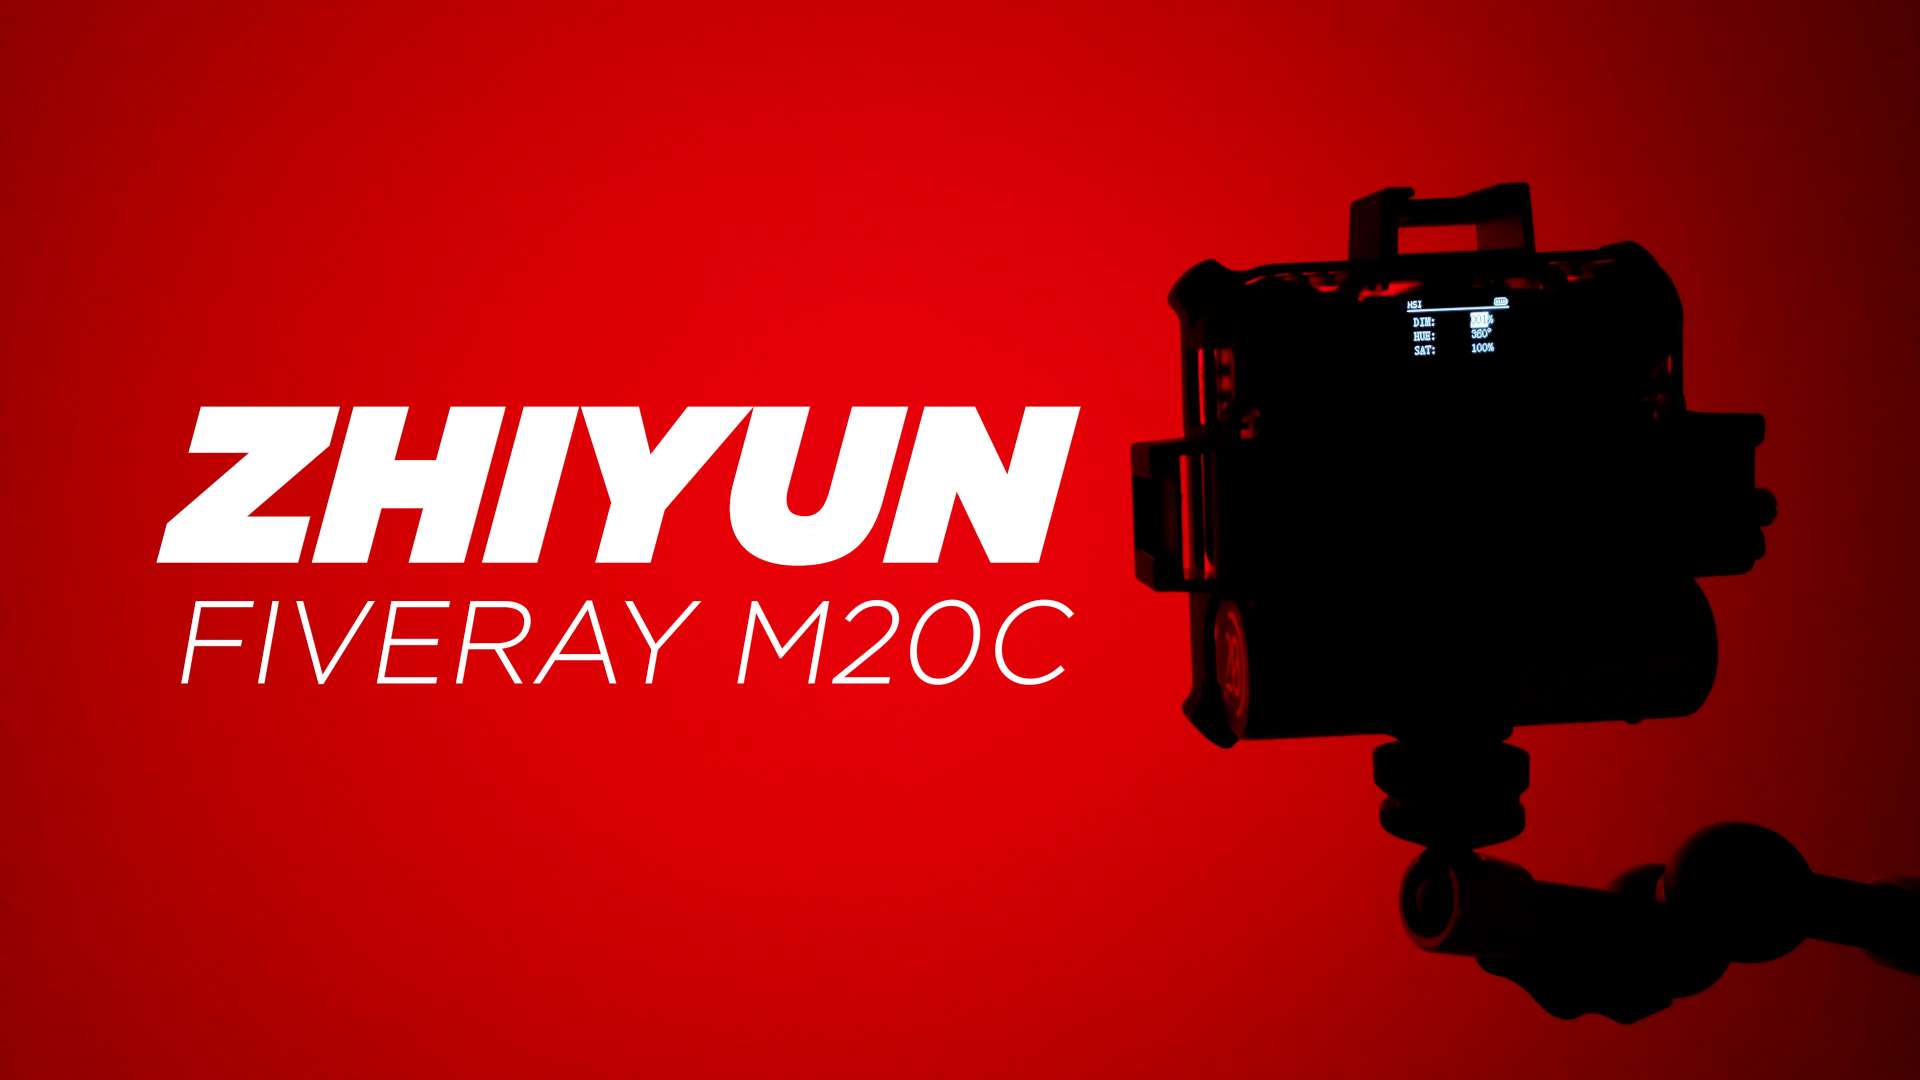 Zhiyun Fiveray M20c Review